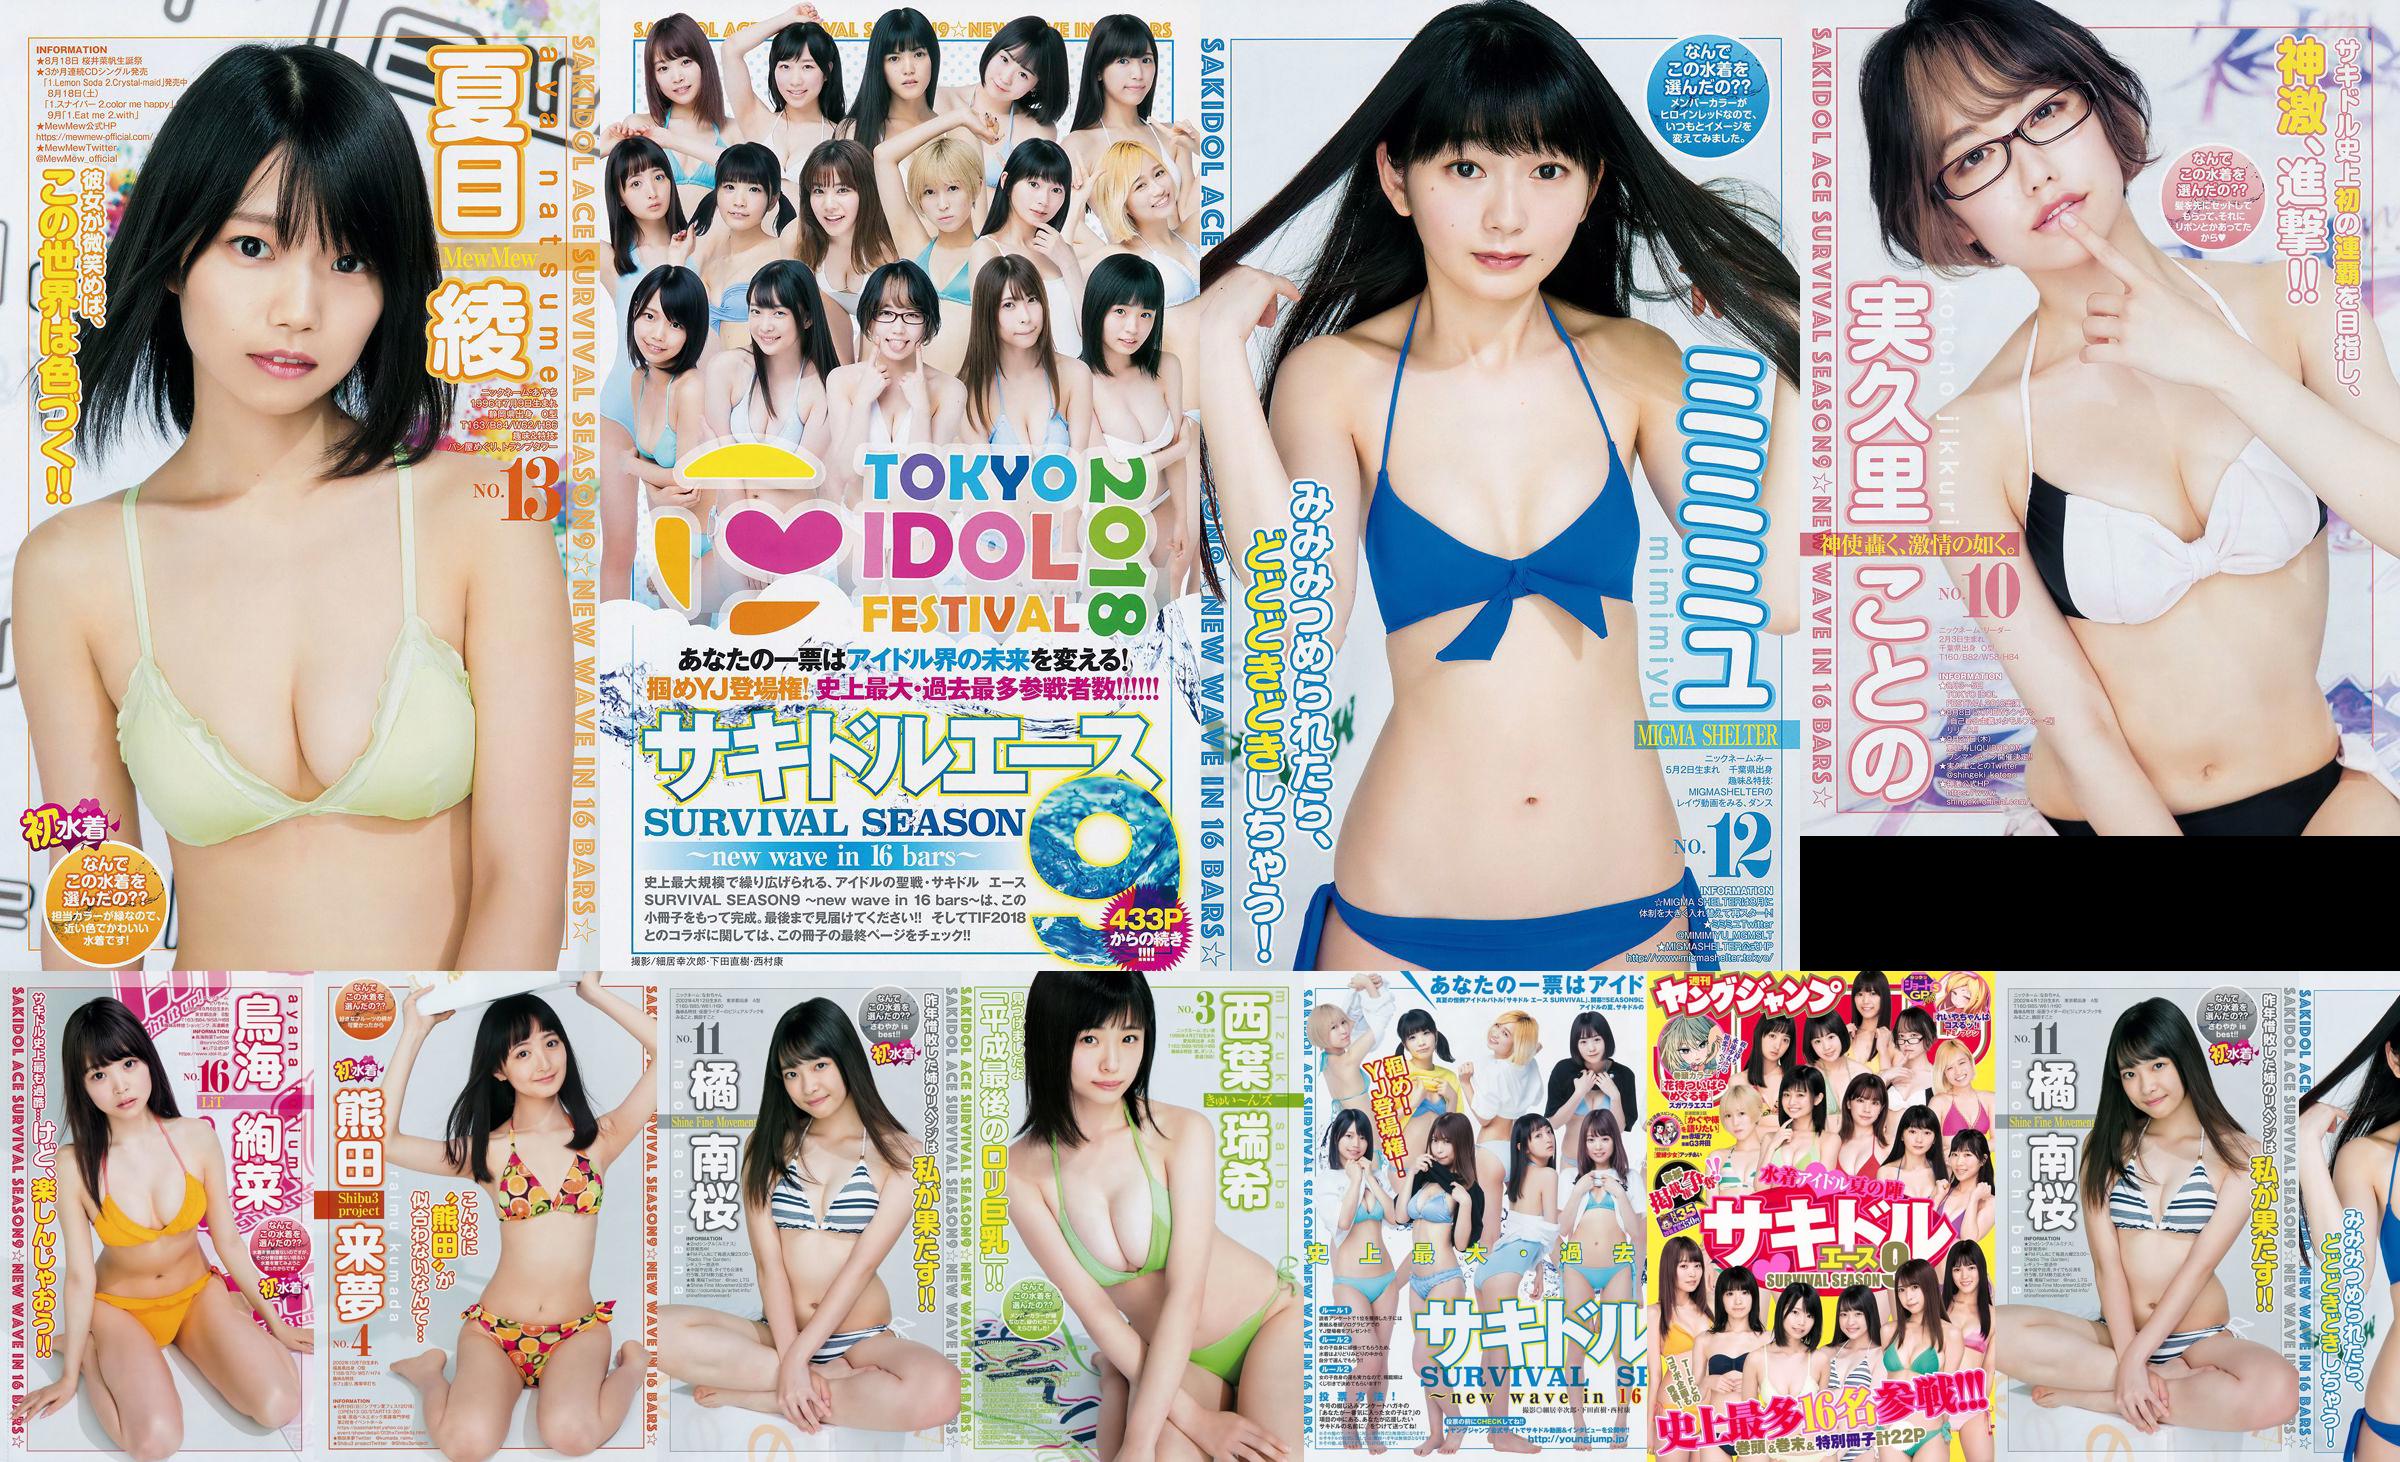 [FLASH] Ikumi Hisamatsu Risa Hirako Ren Ishikawa Angel Moe AKB48 Kaho Shibuya Misuzu Hayashi Ririka 2015.04.21 Photo Toshi No.ddd4e5 Page 4